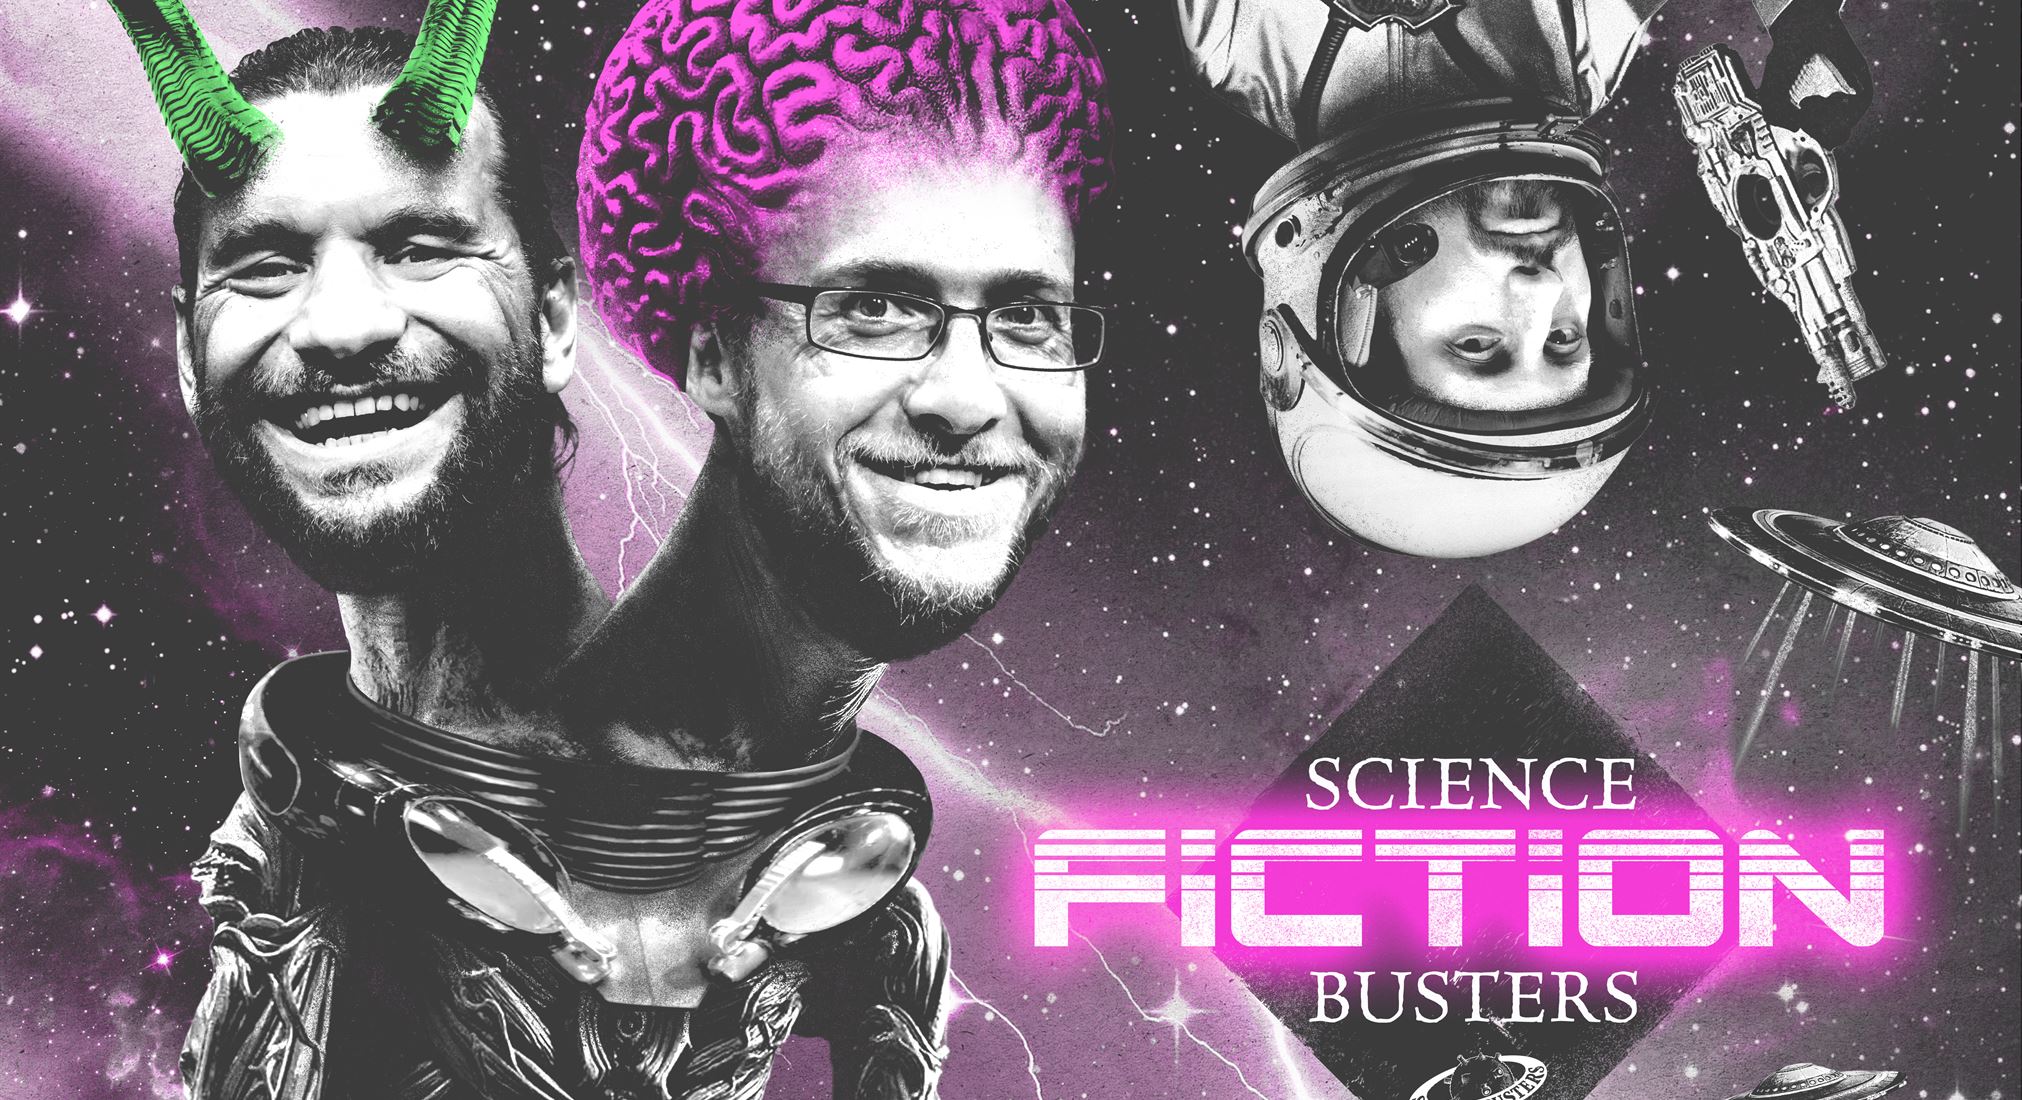 Science Fiction Busters am 6.10.2018 um 20:00 Uhr